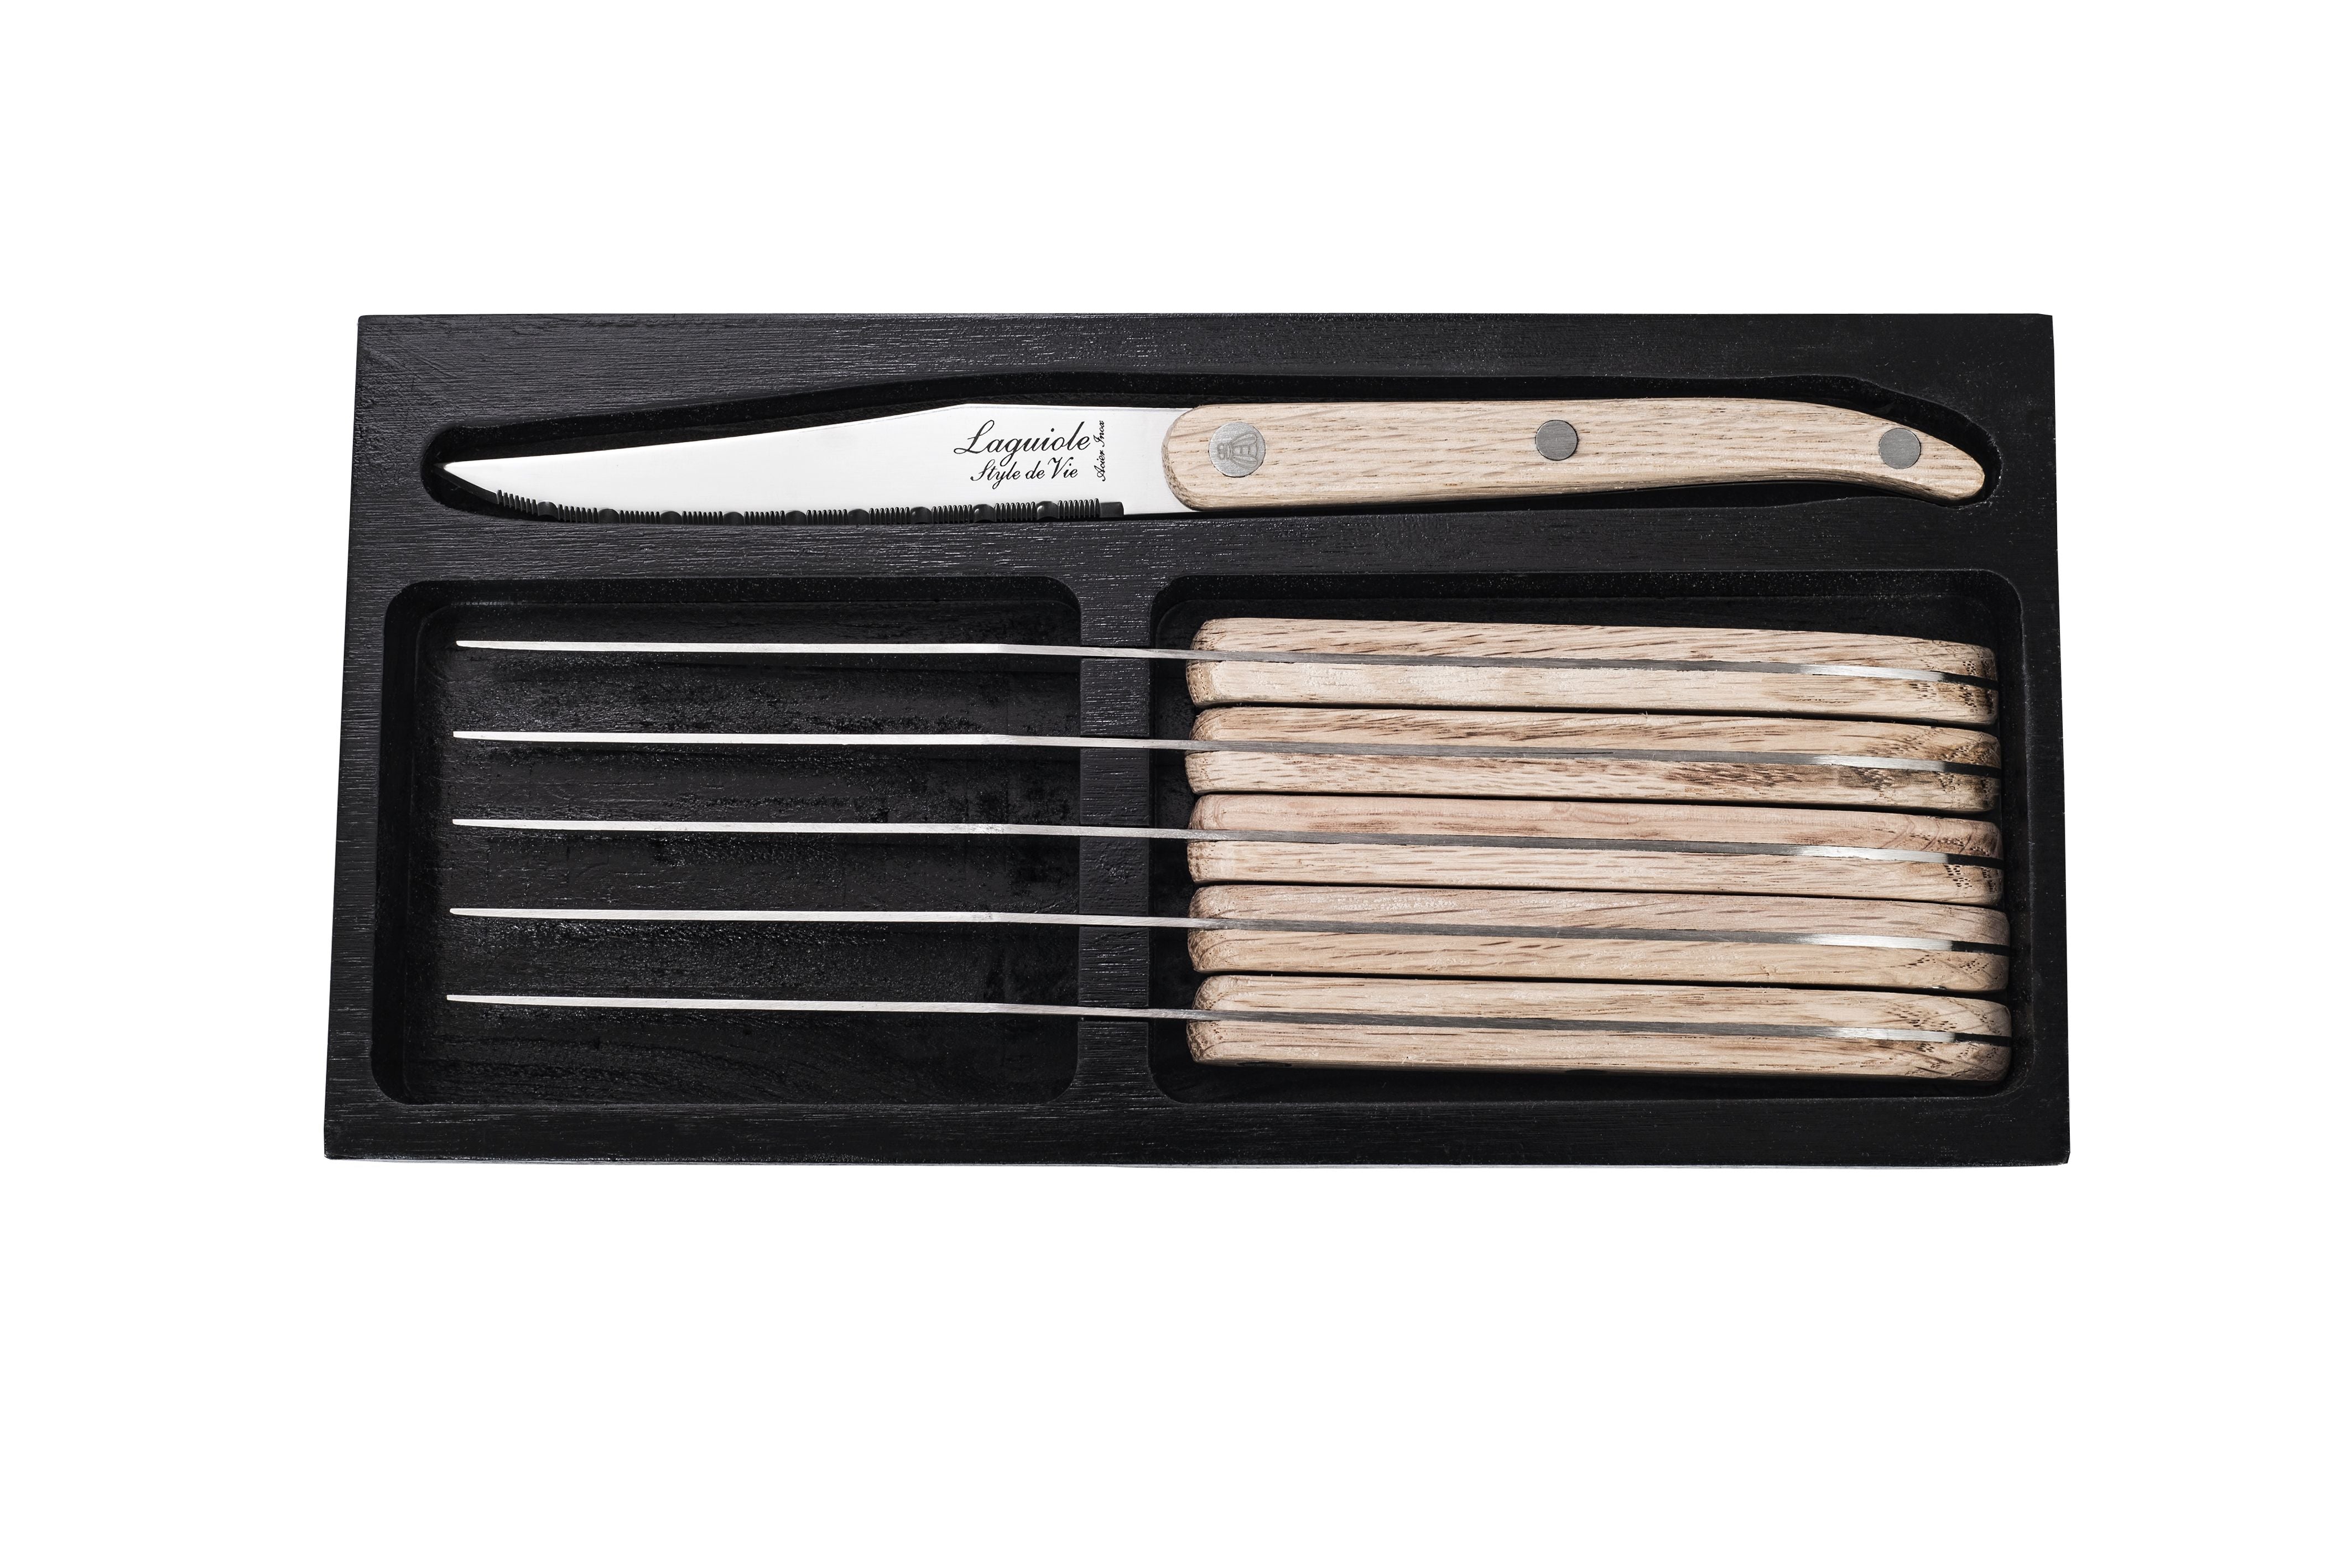 Style De Vie Authentique Laguiole Innovation Line Steak Knives 6 Piece Set Oak Wood, Servurderet Blade